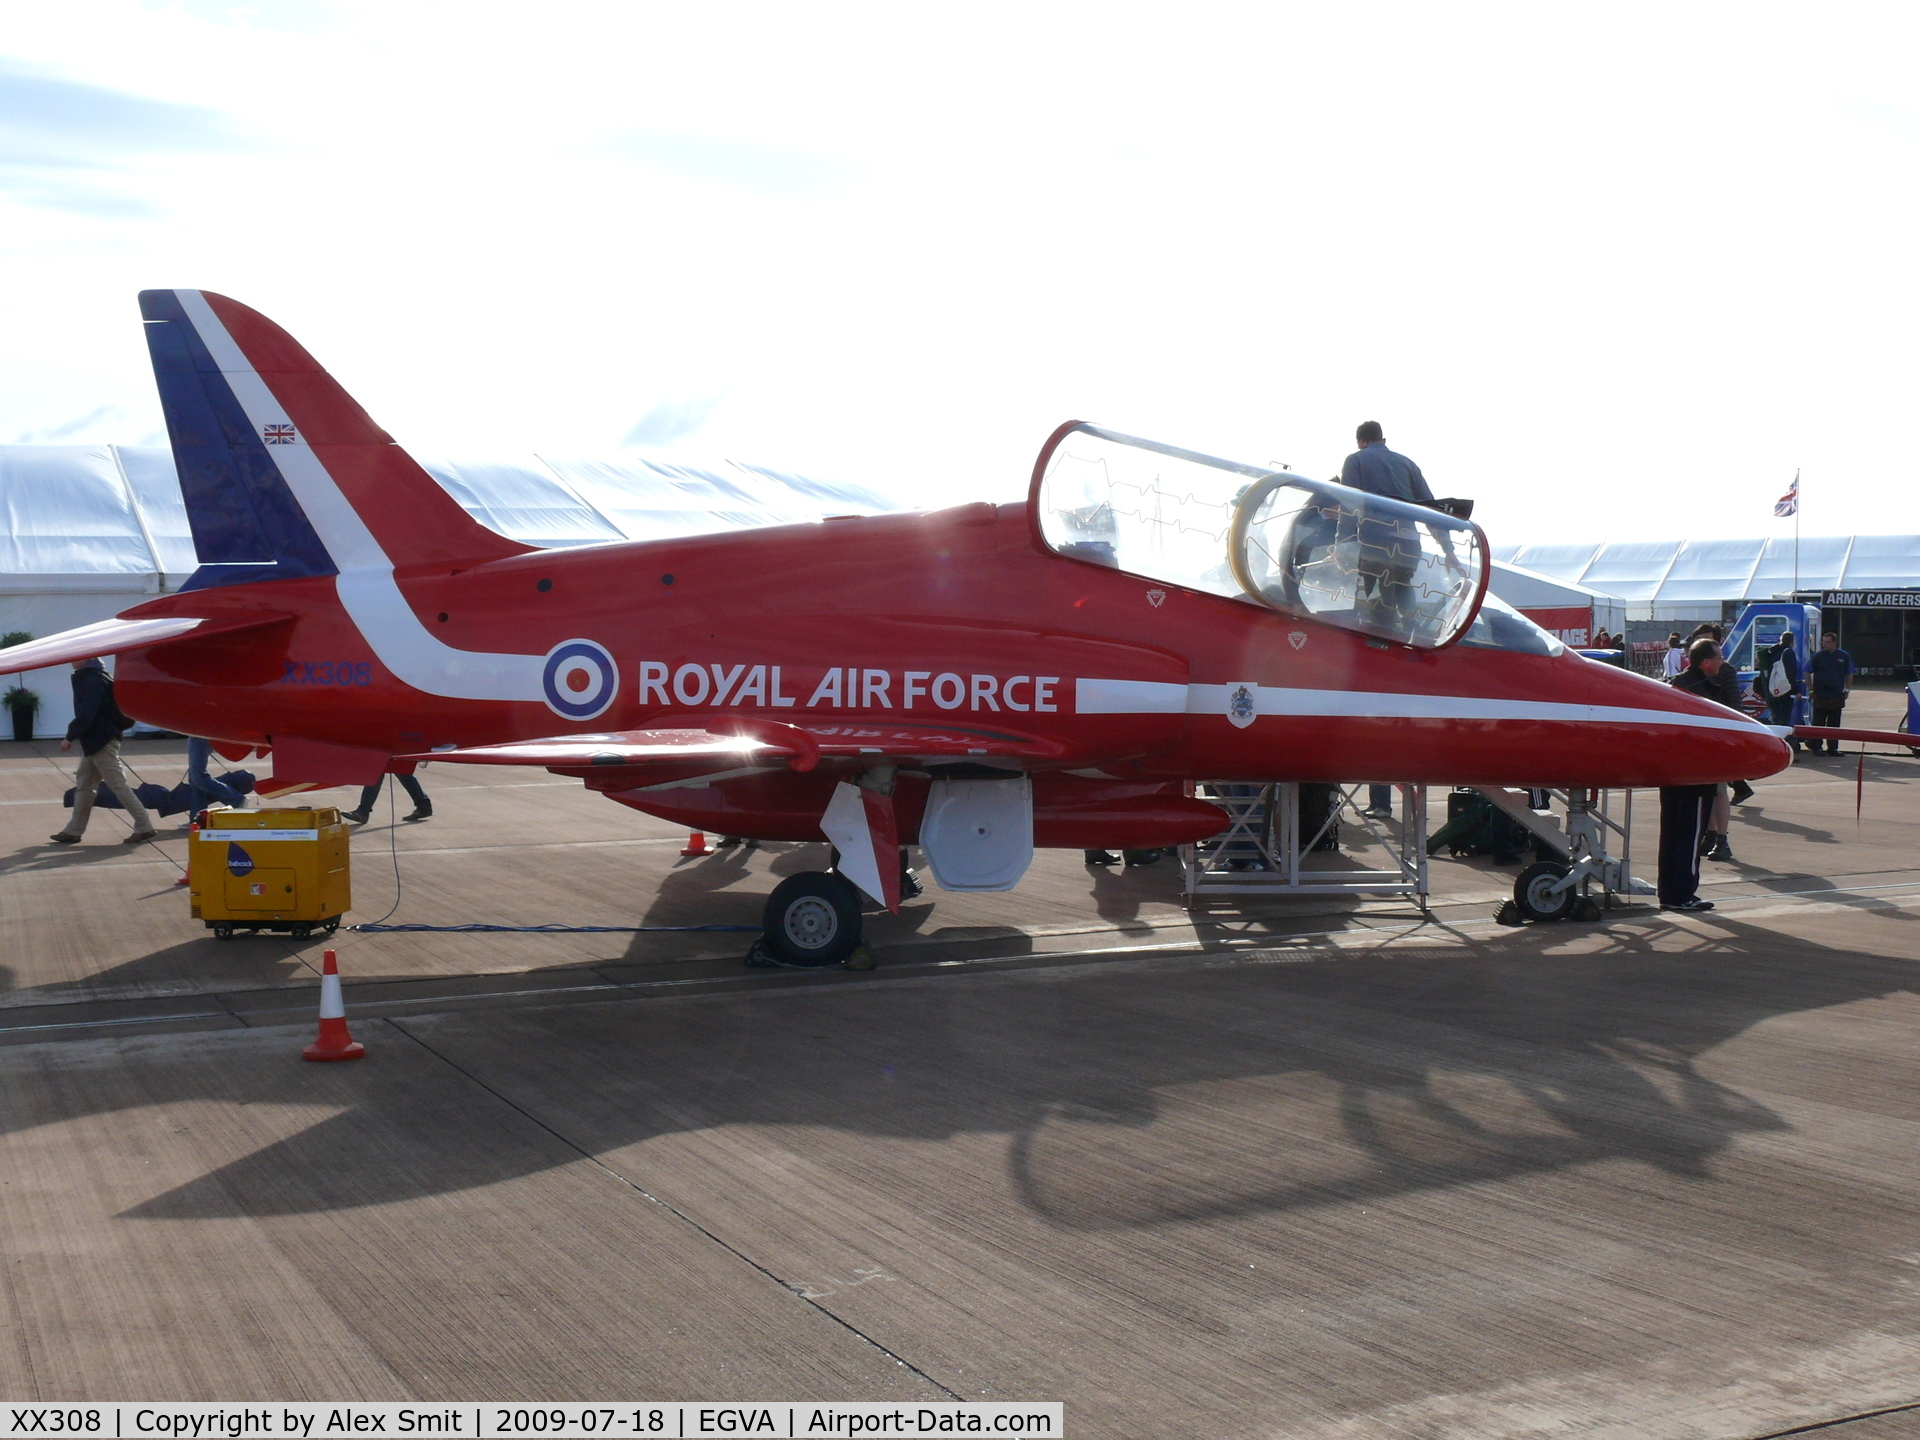 XX308, 1980 Hawker Siddeley Hawk T.1 C/N 143/312133, Hawker Hawk T1 XX308 Royal Air Force Red Arrows